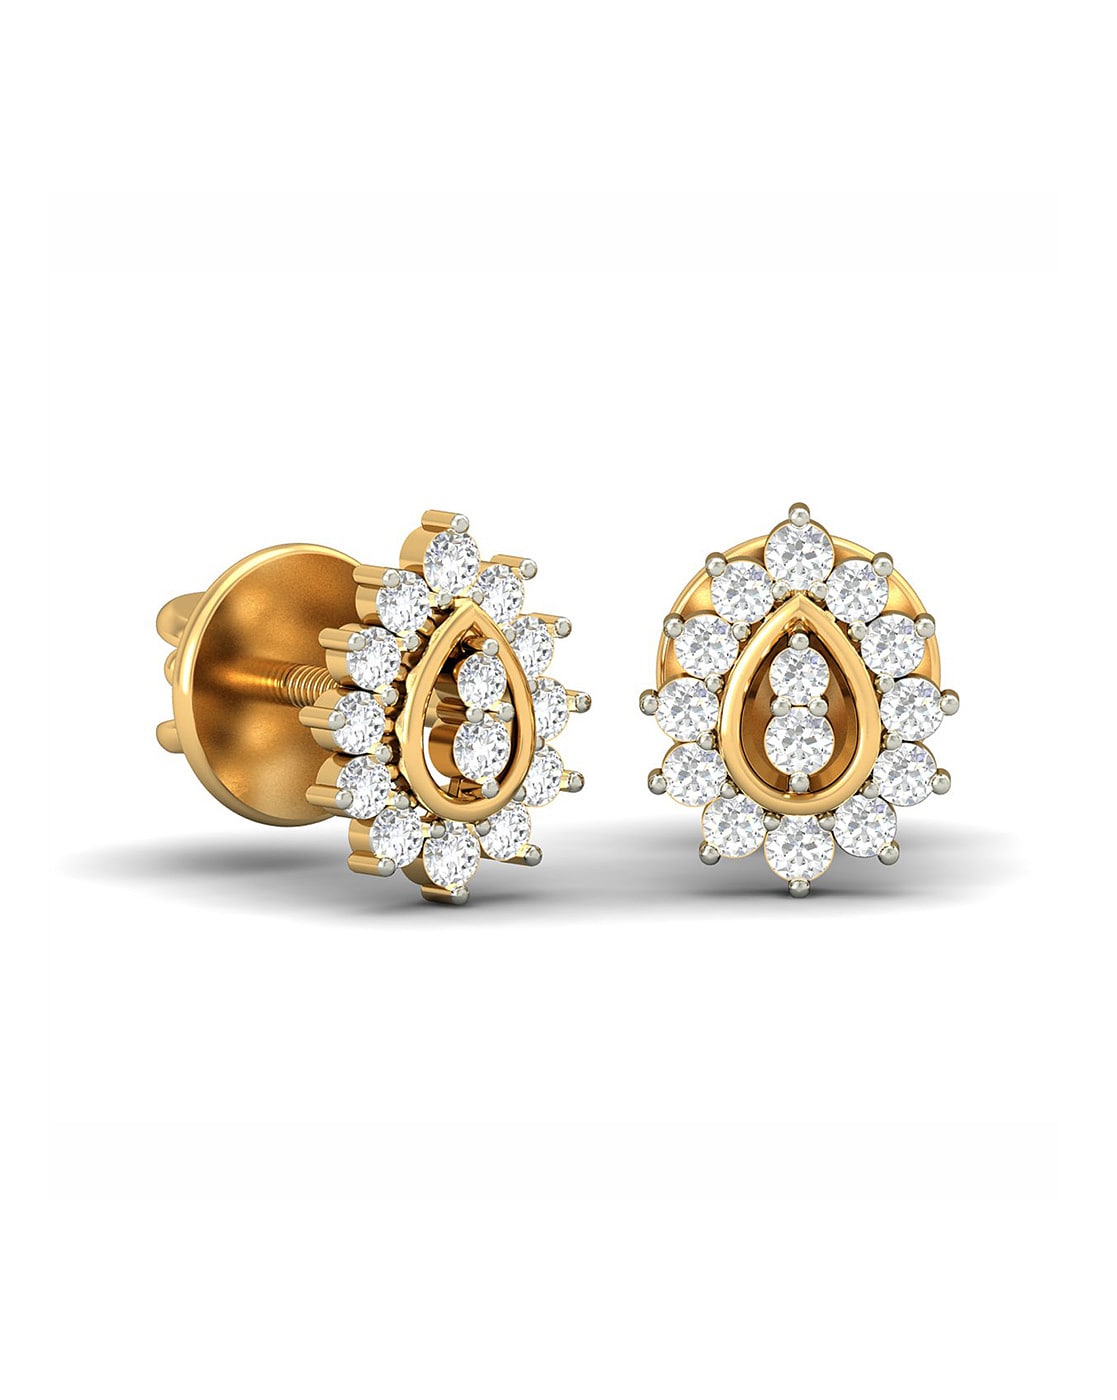 Buy Graceful Mango Shaped 18Kt Diamond Stud Earrings Online - Zaveribros